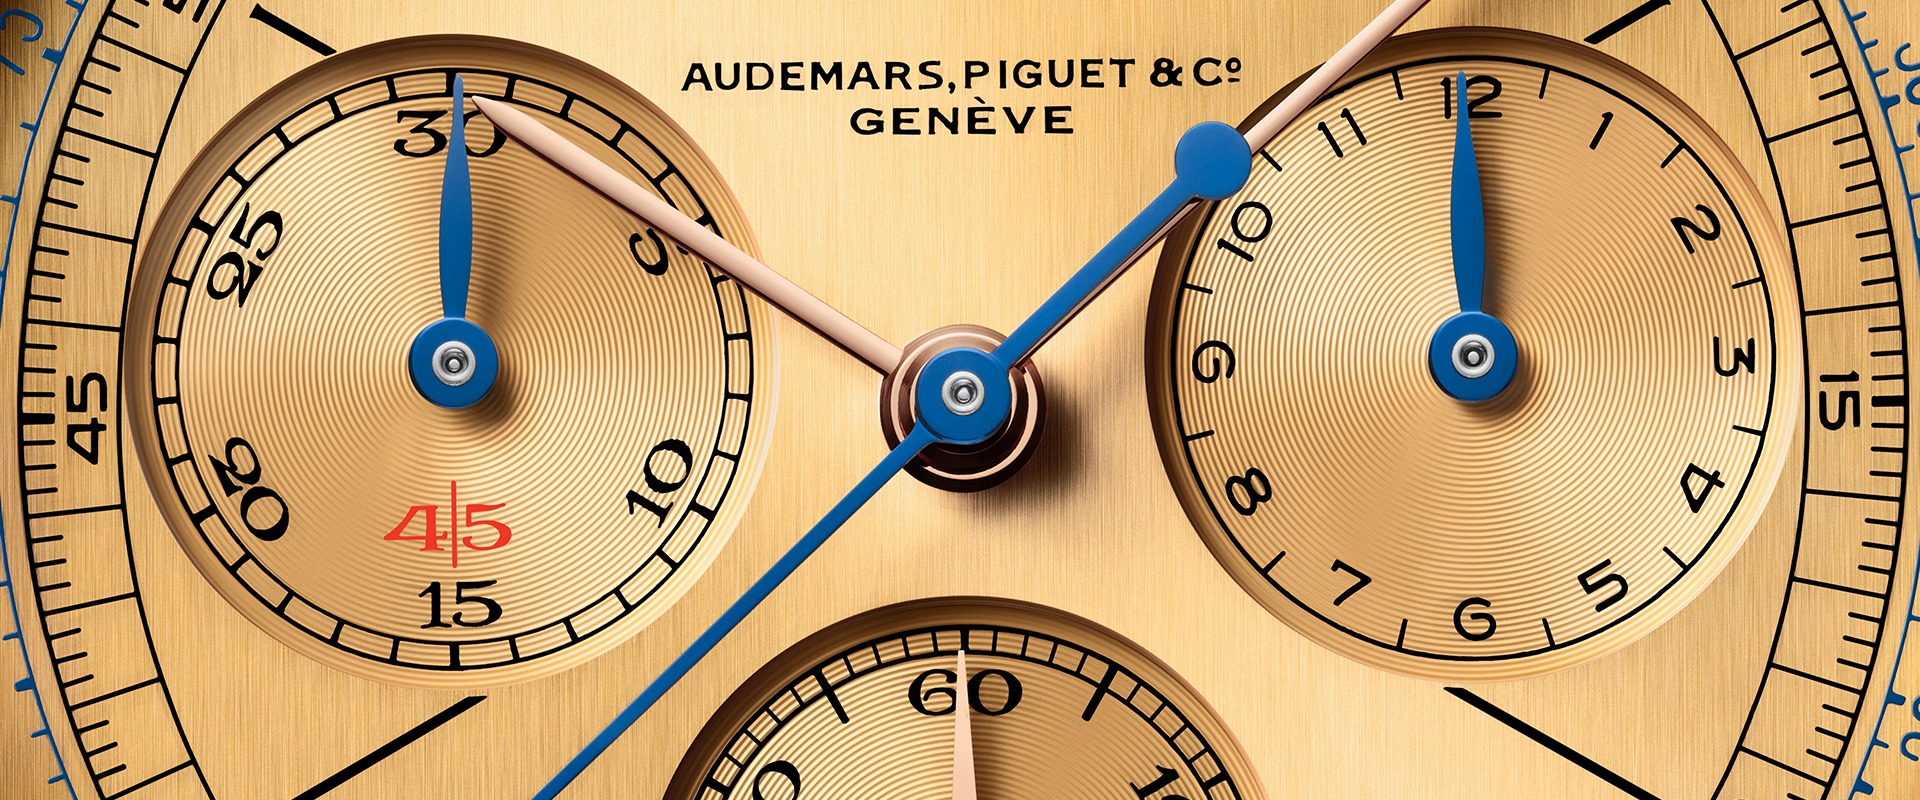 Audemars Piguet [Re]Master01